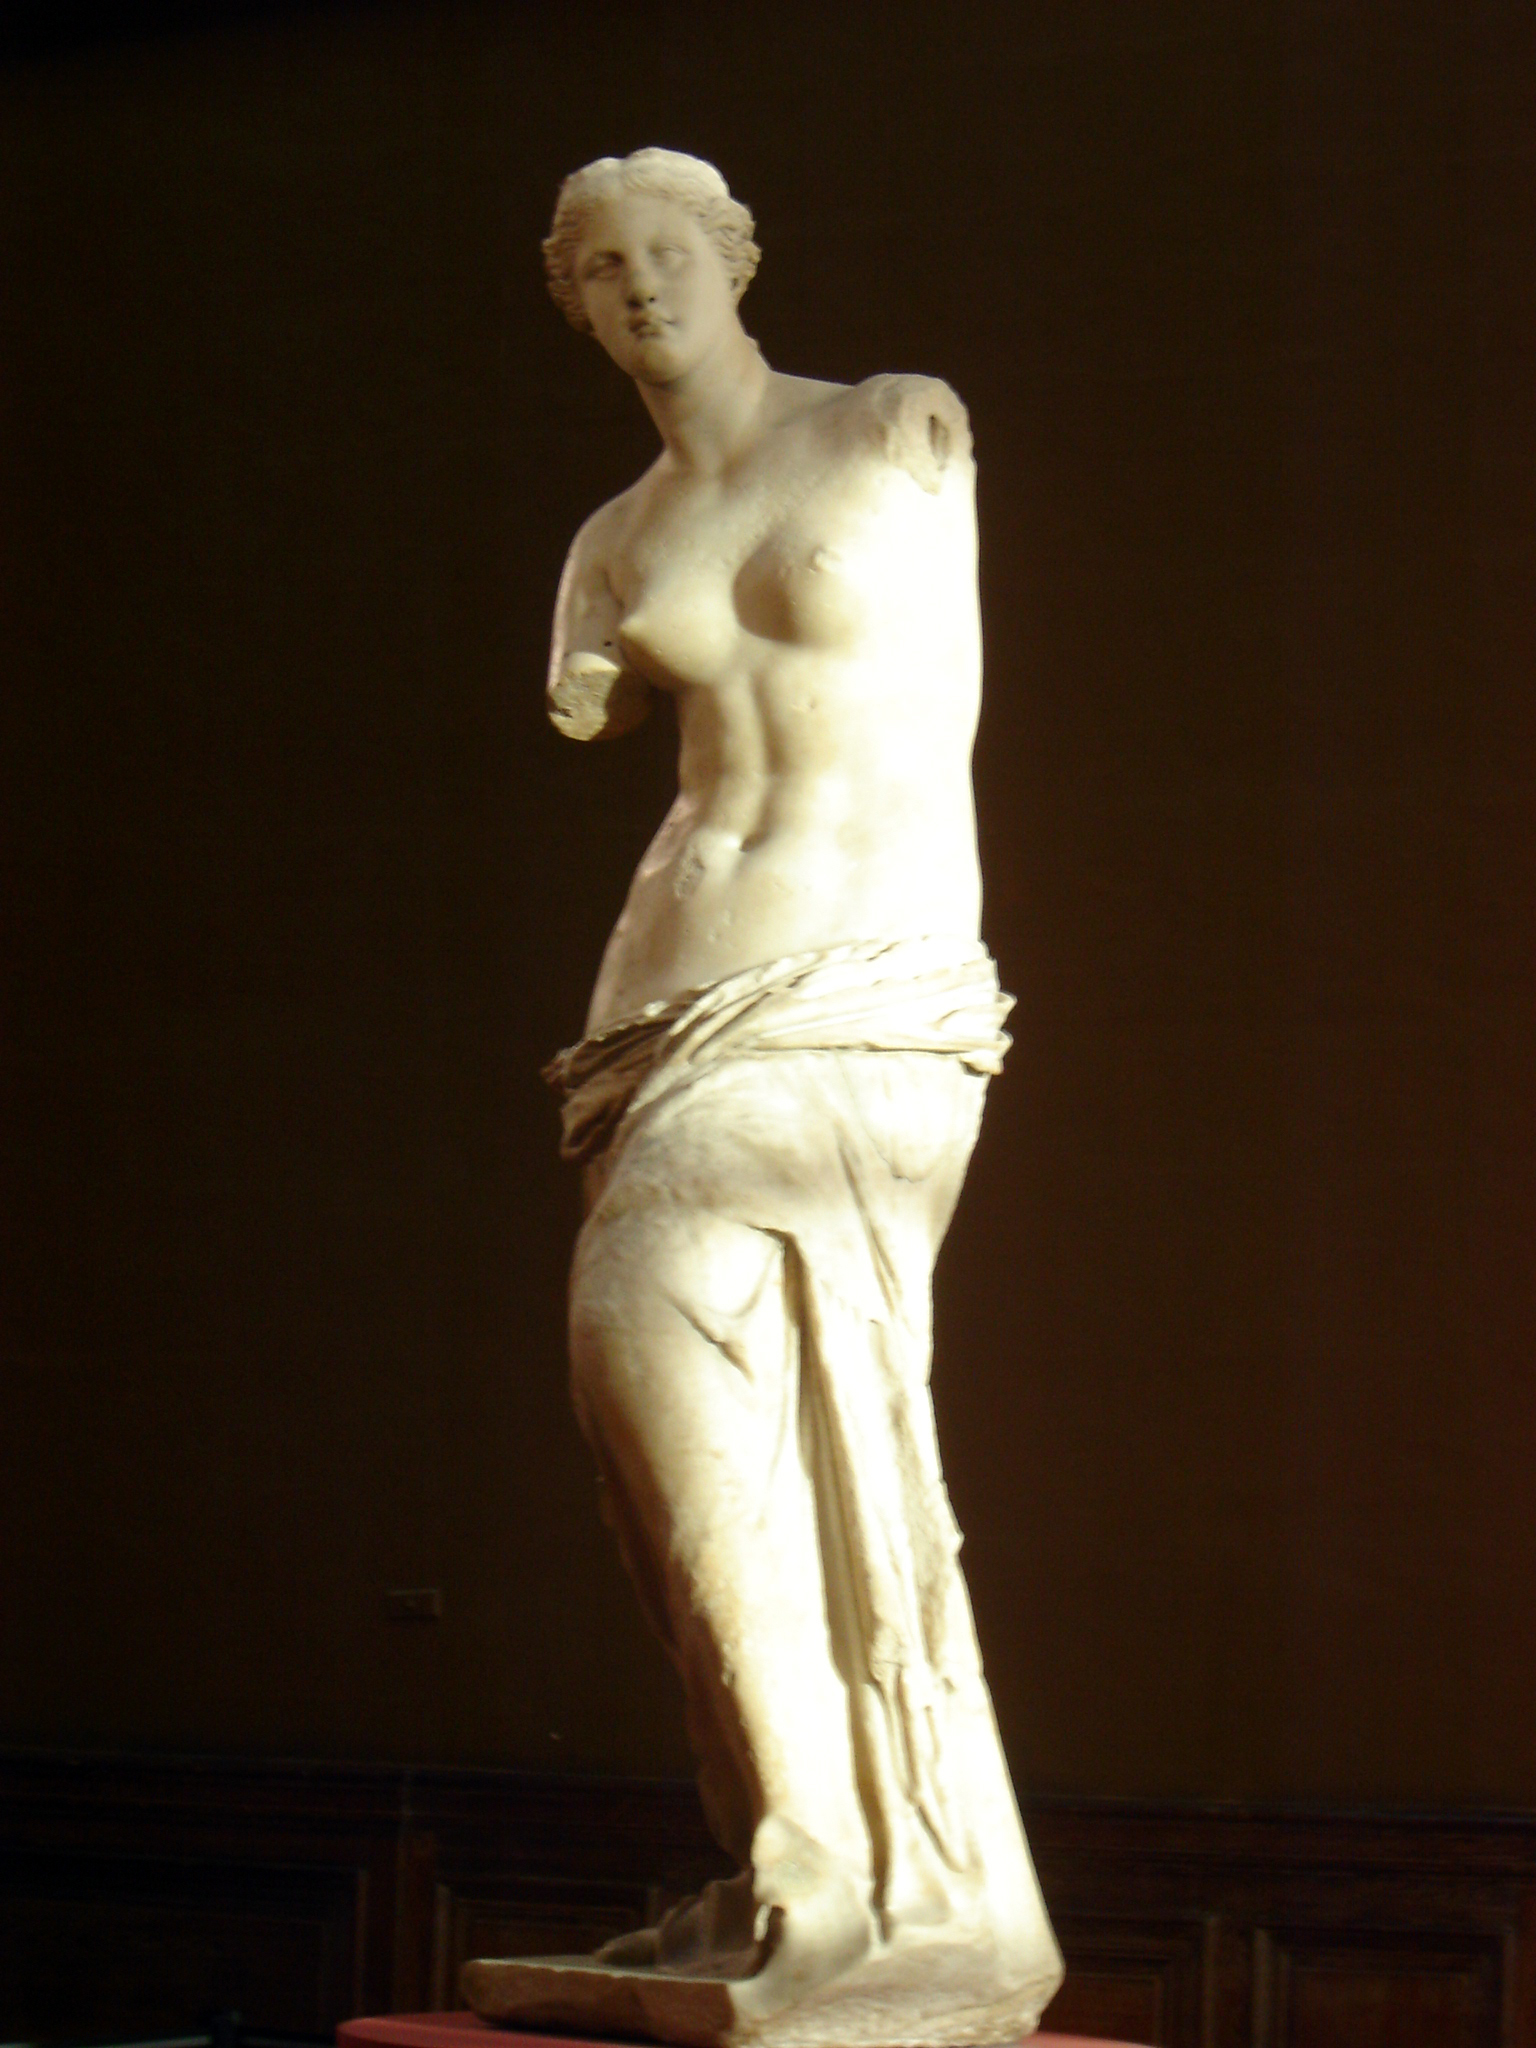 Venus de Milo at the Louvre. Photo by alphacityguides.